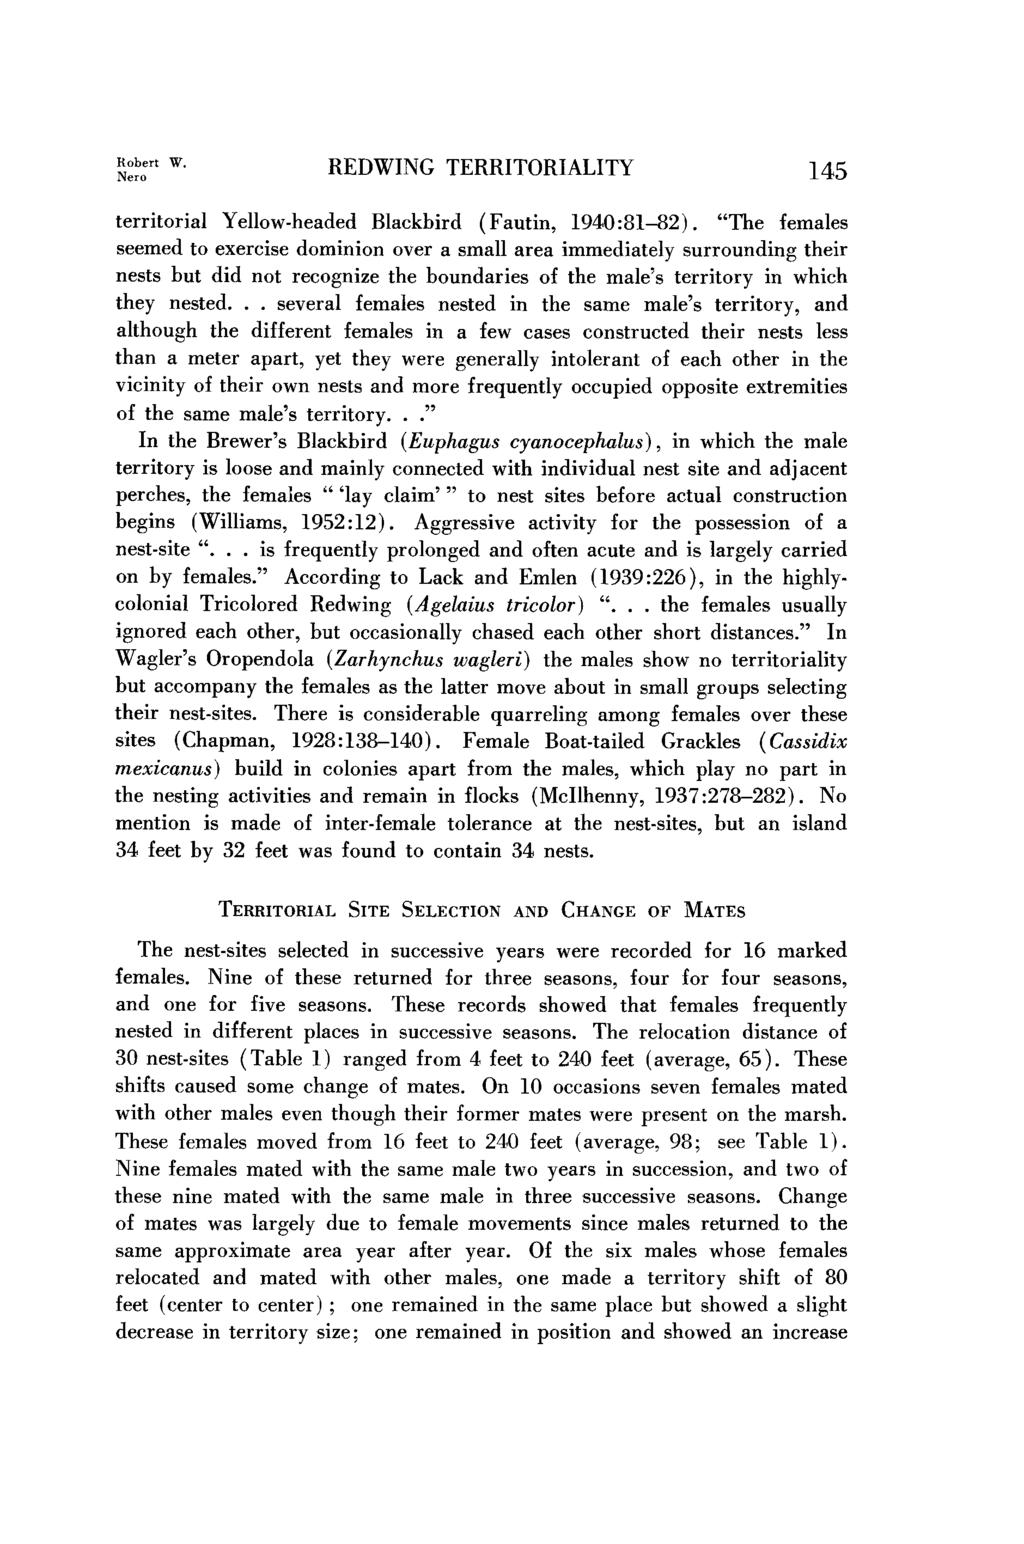 REDWING TERRITORIALITY territorial Yellow-headed Blackbird (Fautin, 1940:81-82).